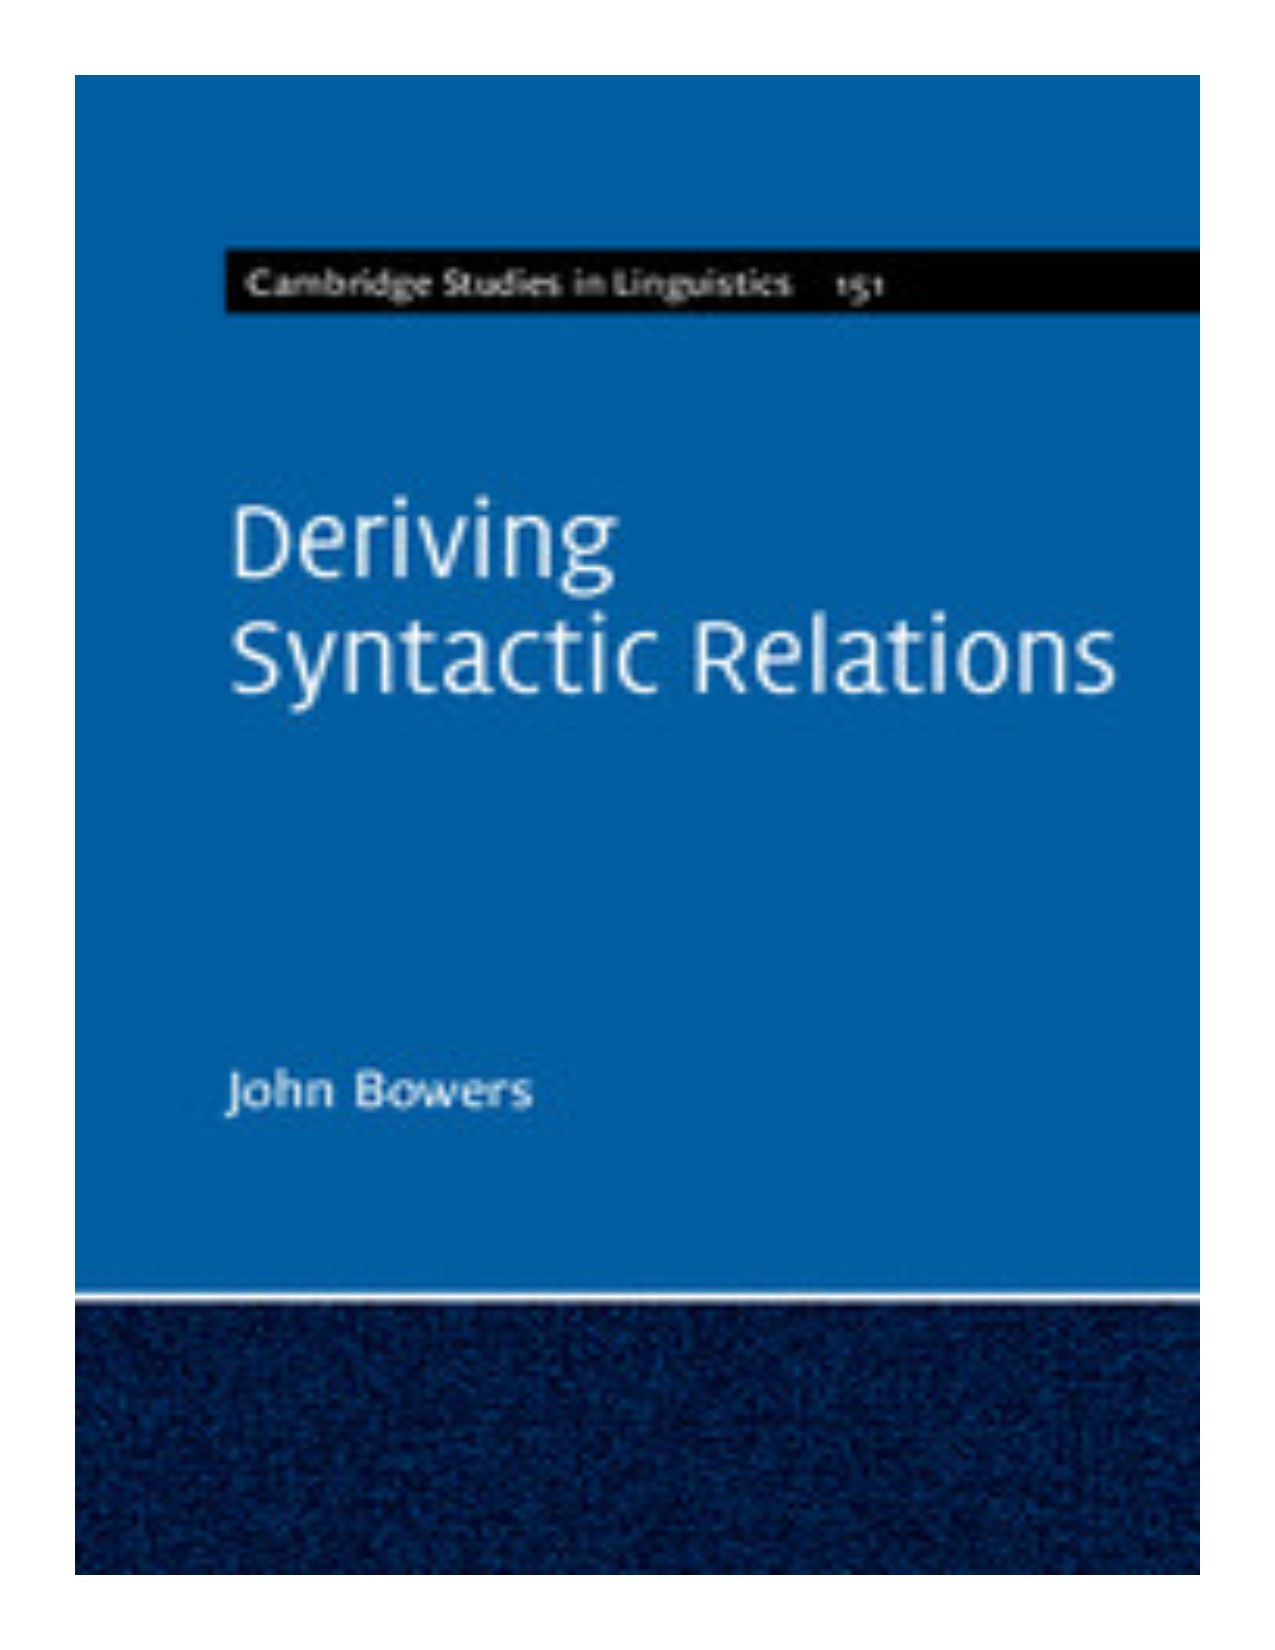 Deriving syntactic relations